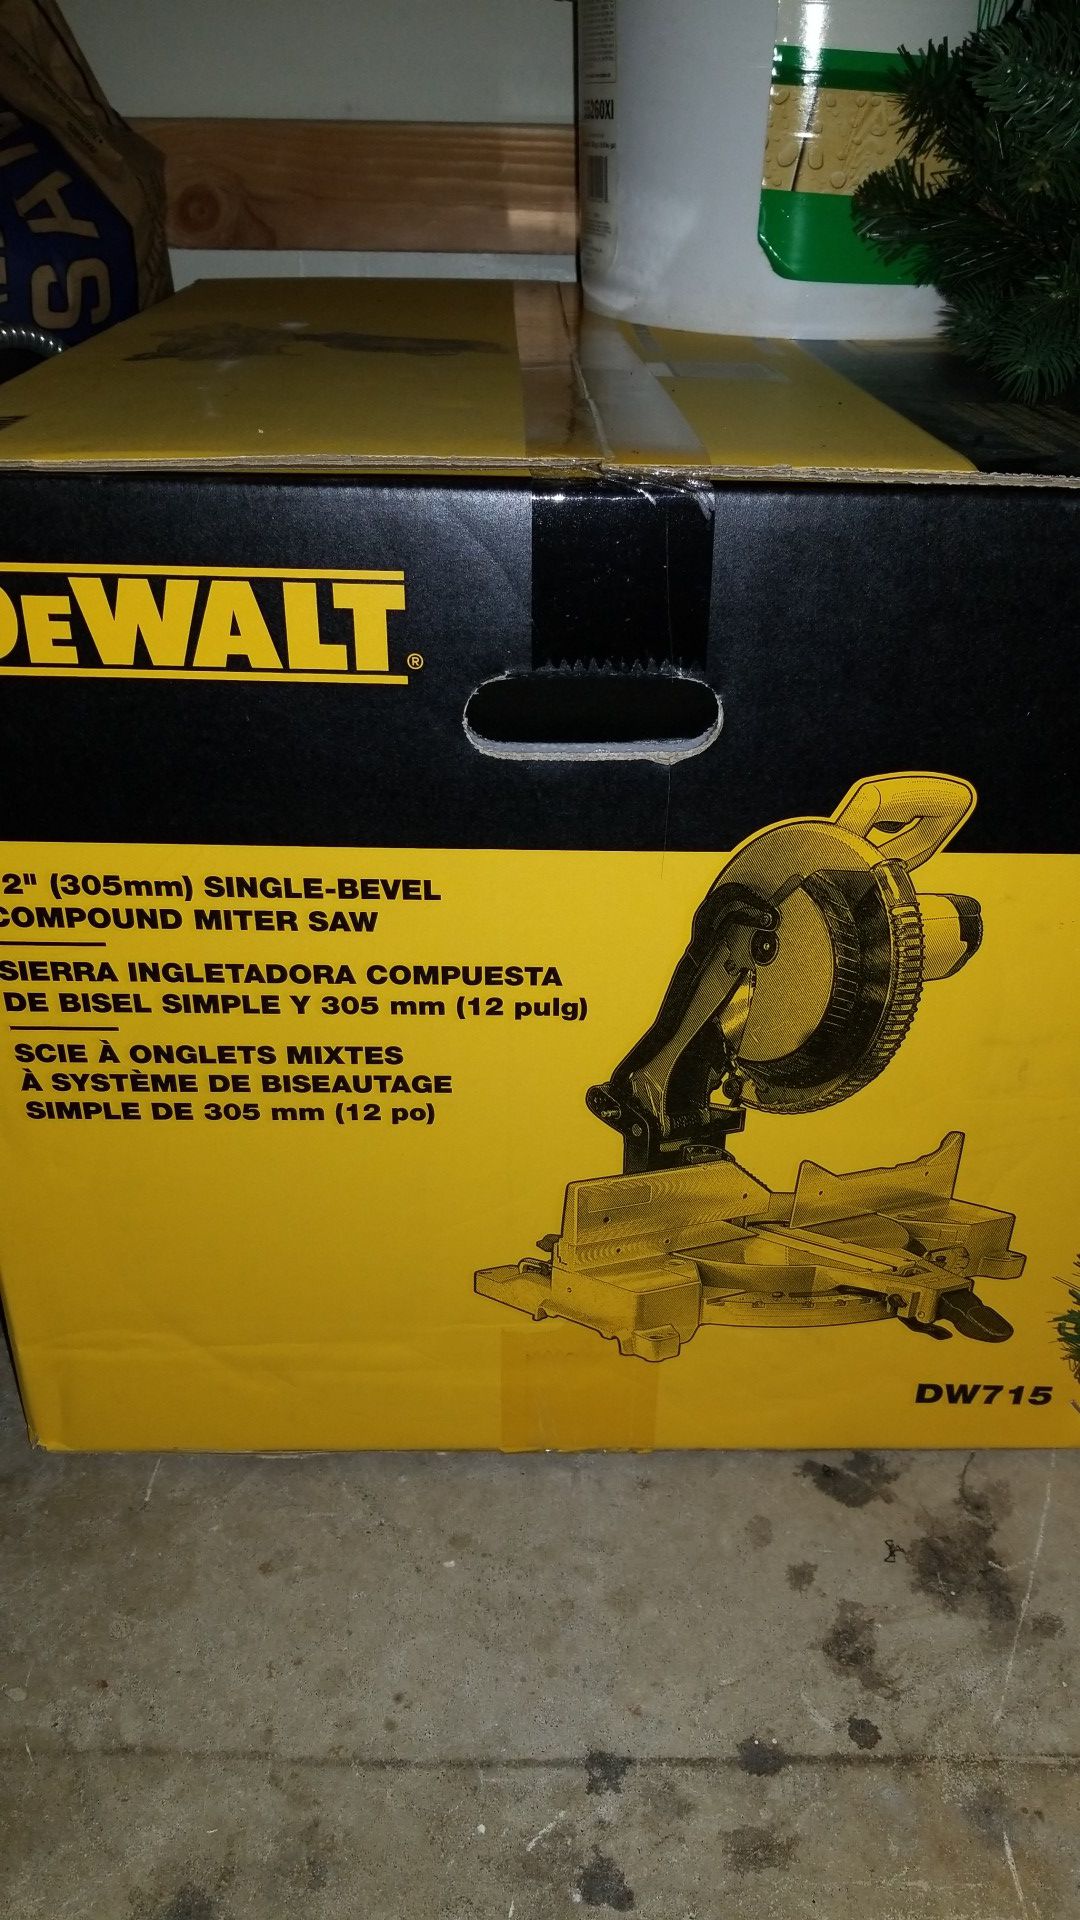 Dewalt DW715 - Single Bevel Compound Miter Saw